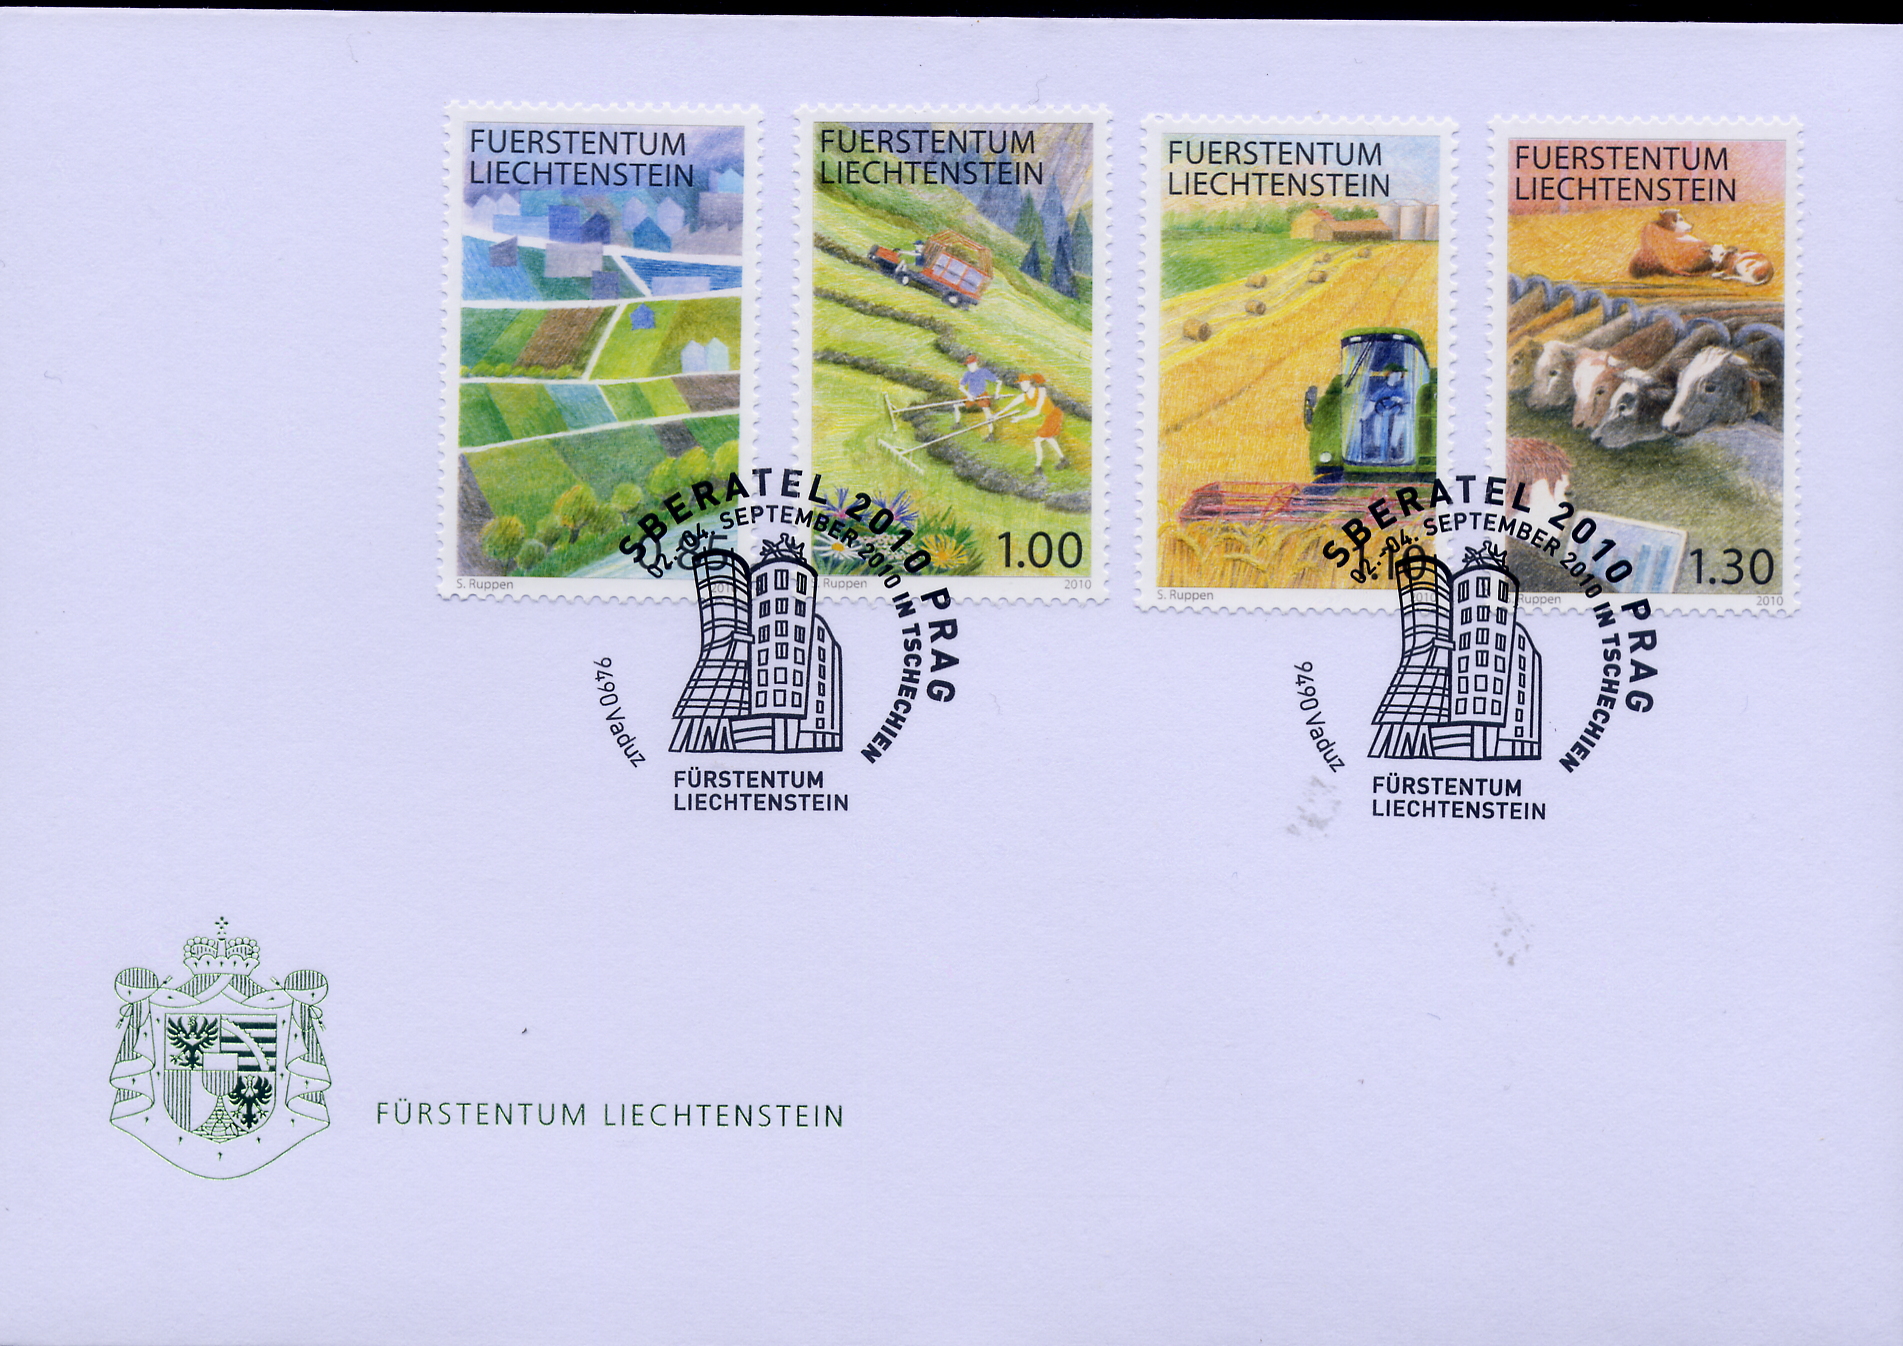 https://swiss-stamps.org/wp-content/uploads/2023/12/2010-9-Prag.jpg